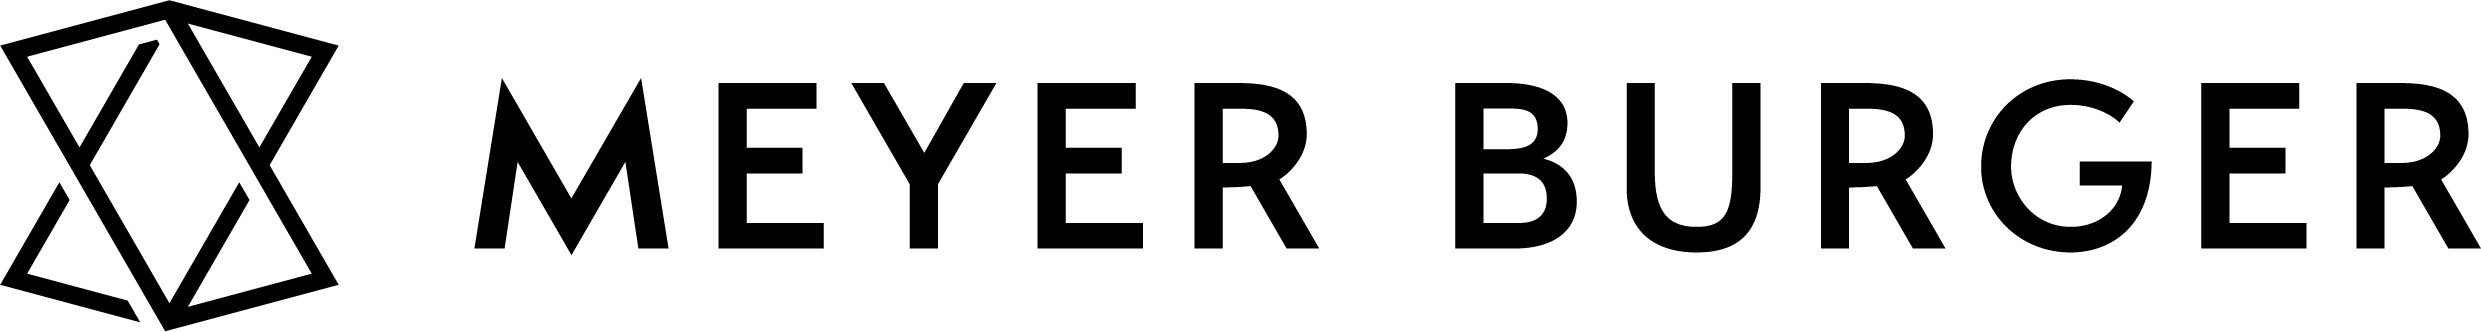 MeyerBurger LogoBlack RGB